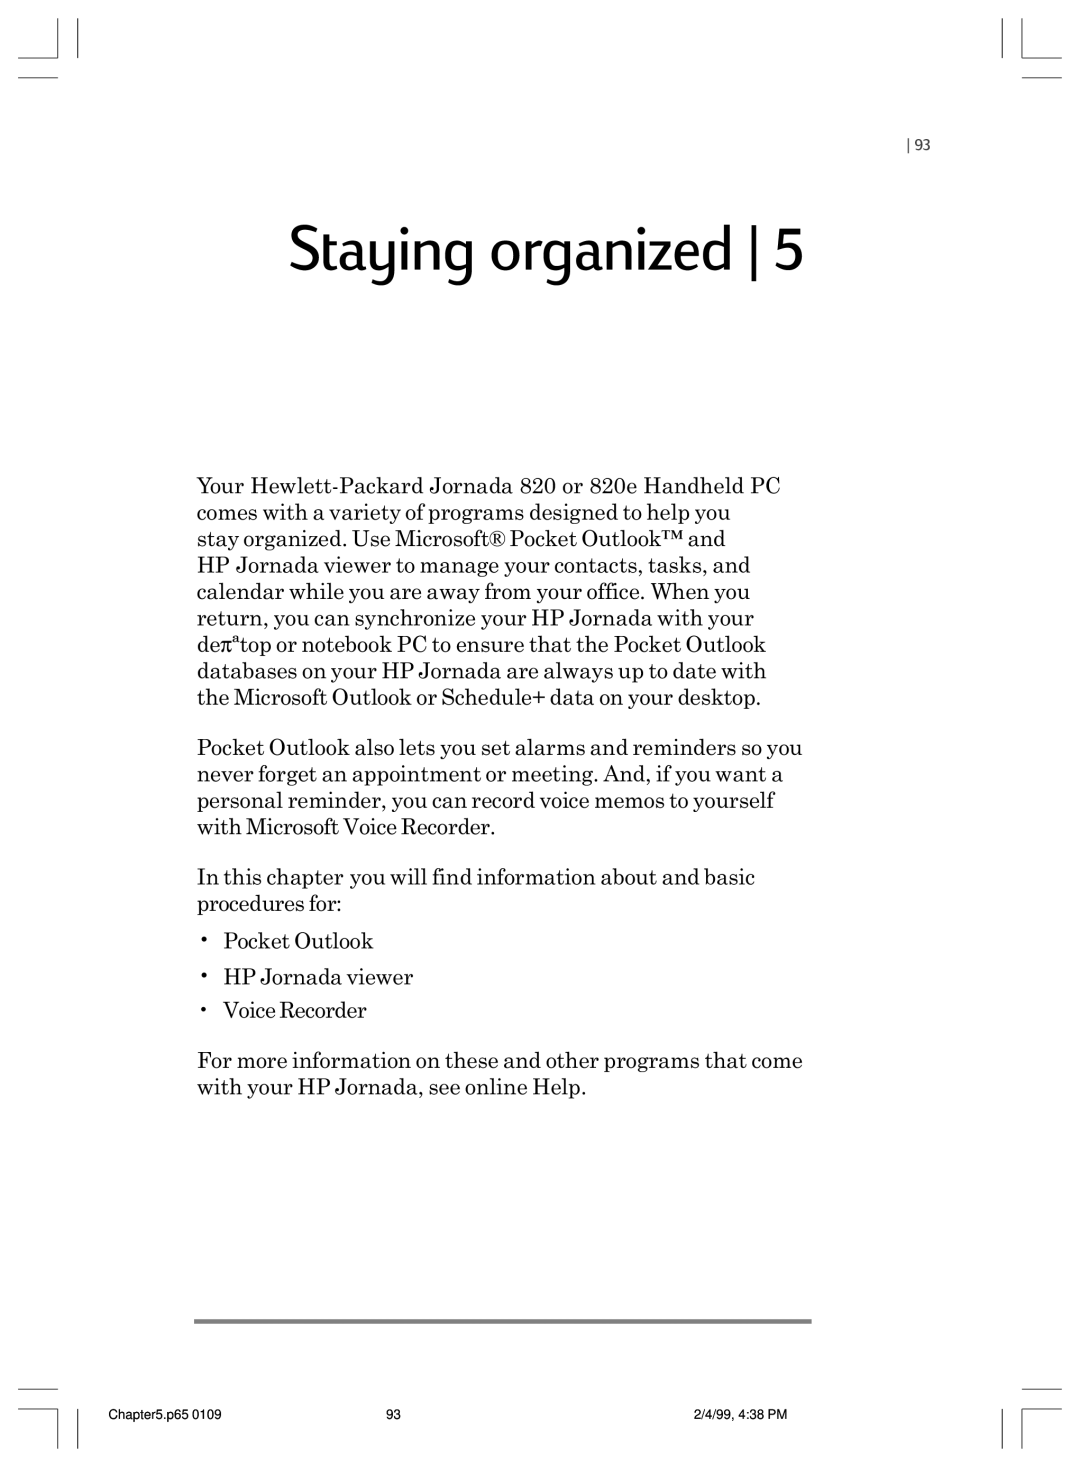 HP 820 E manual Staying organized 